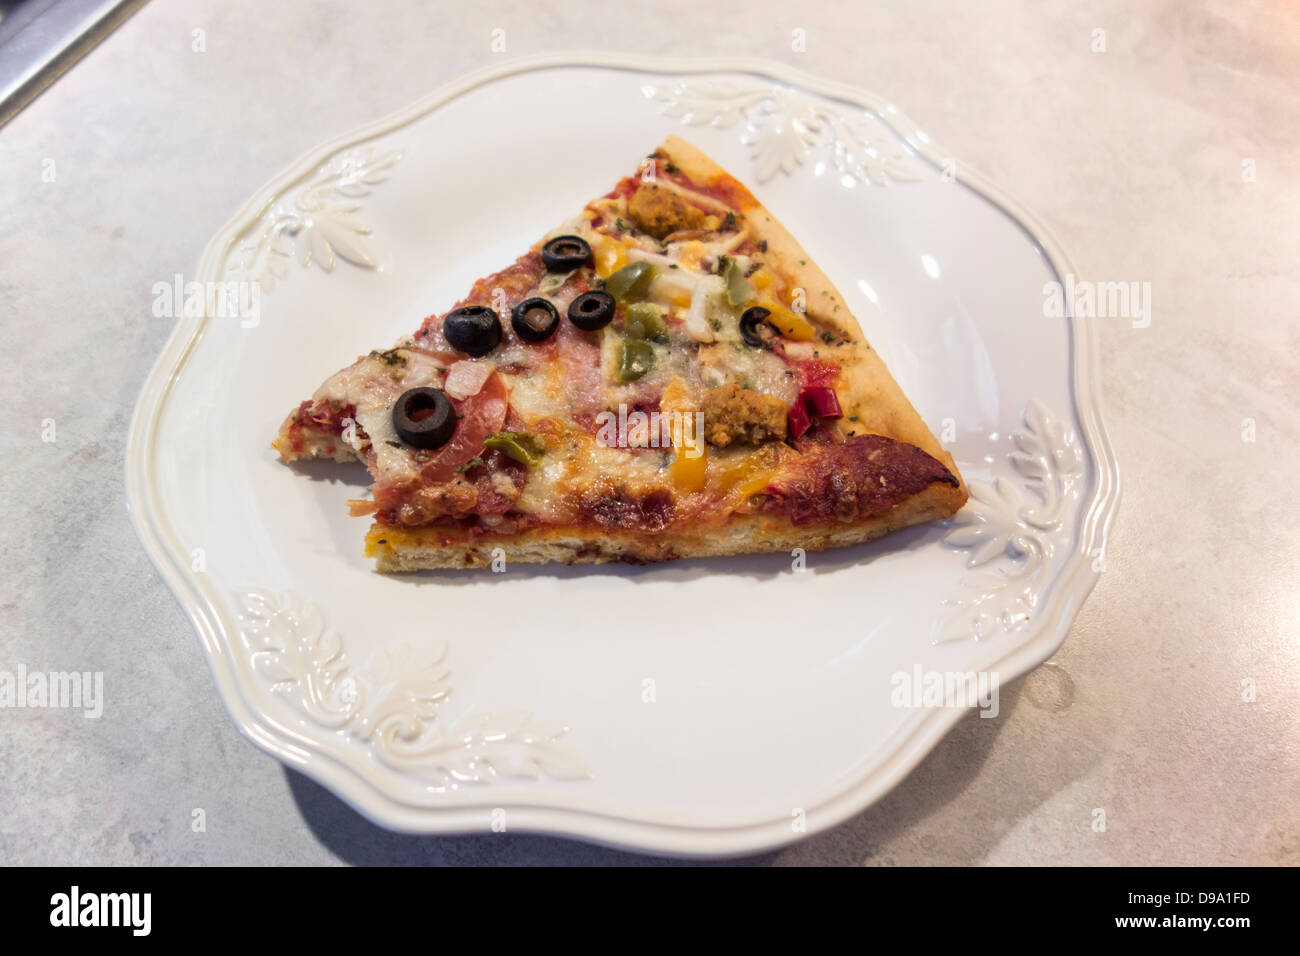 Ein Slize oberste Pizza mit einem Biss herausgenommen, auf einem weißen Teller. Hautnah. USA. Stockfoto